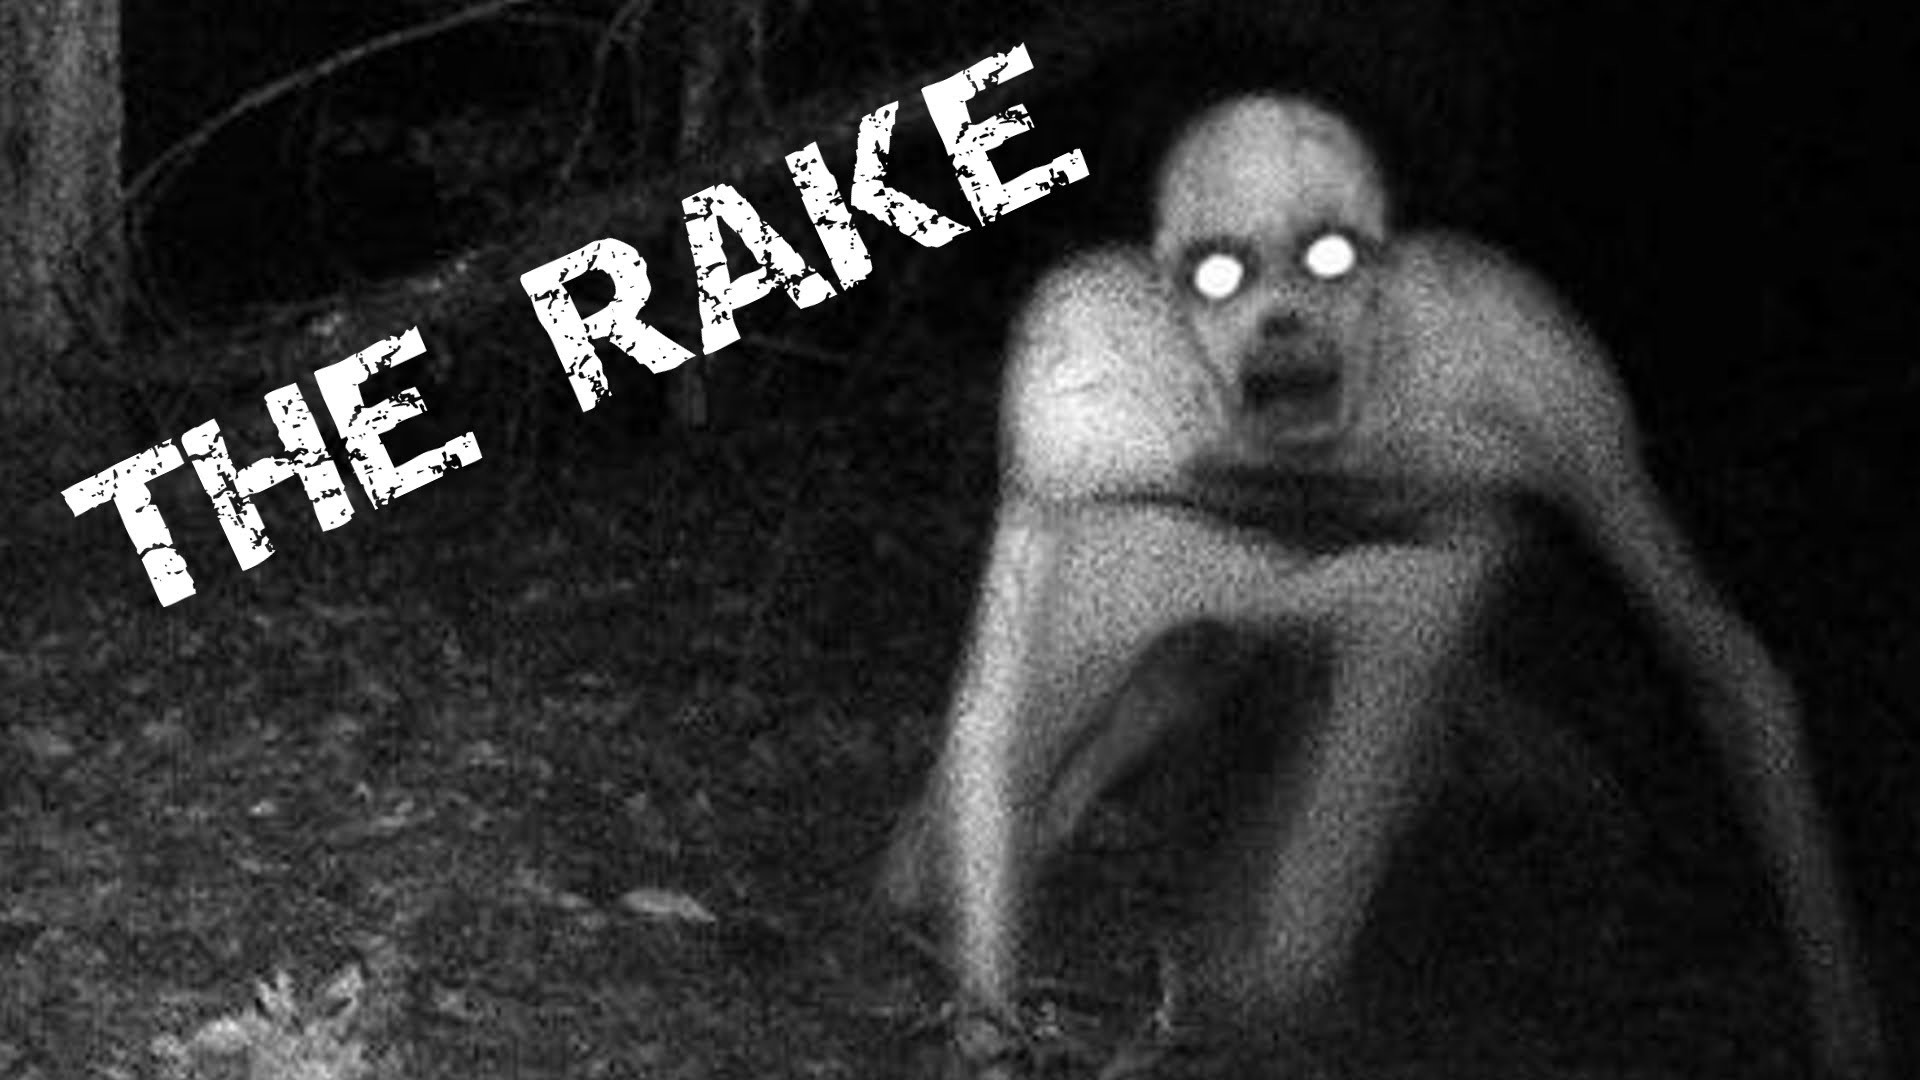 1920x1080 The Rake - Creepypasta Reading